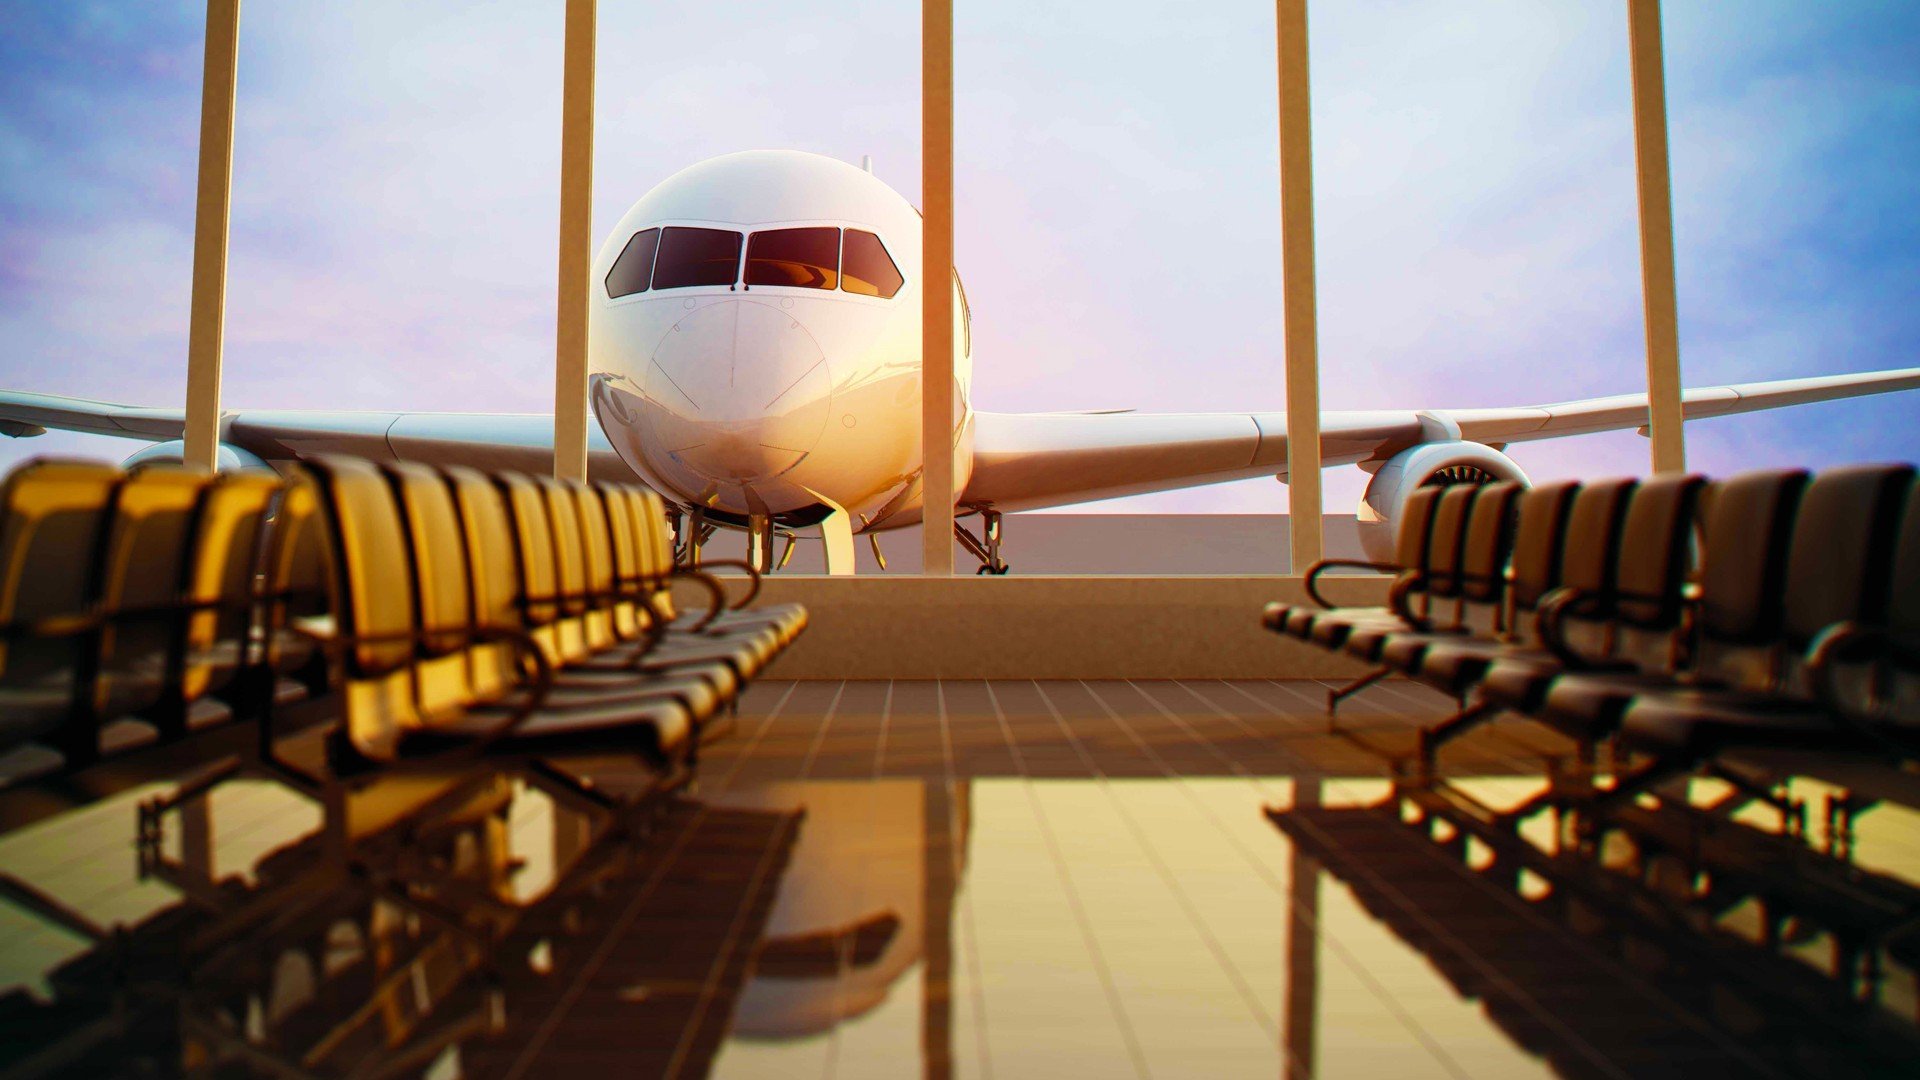 Airplane Airport Chair Passenger Aircraft Window Sunlight